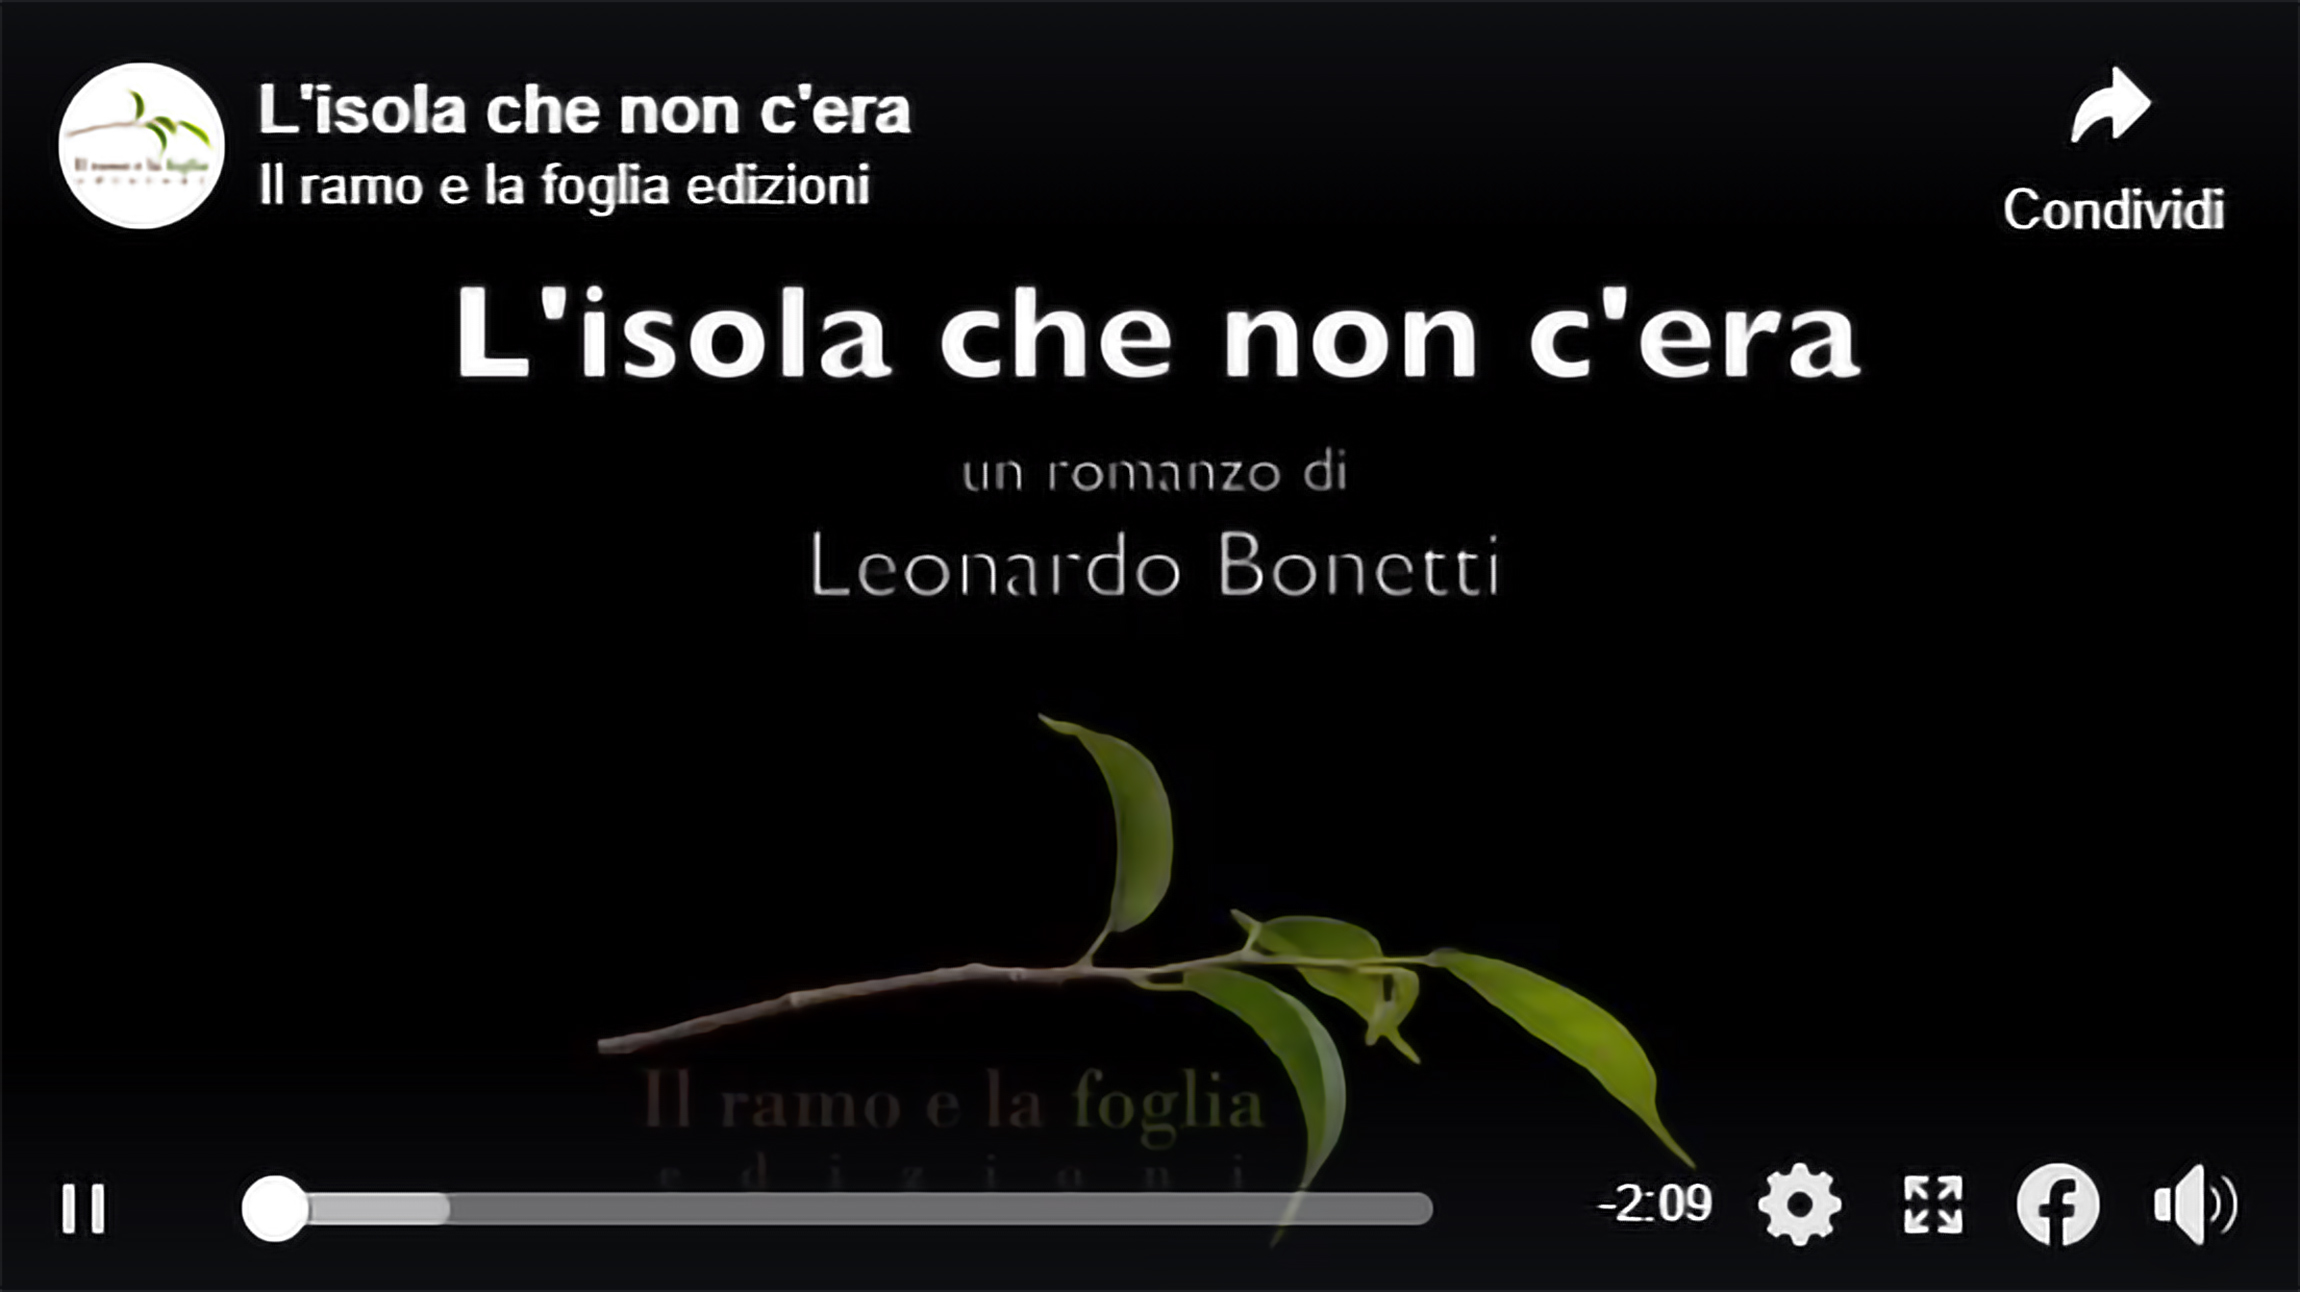 Musica originale e regia di Leonardo Bonetti